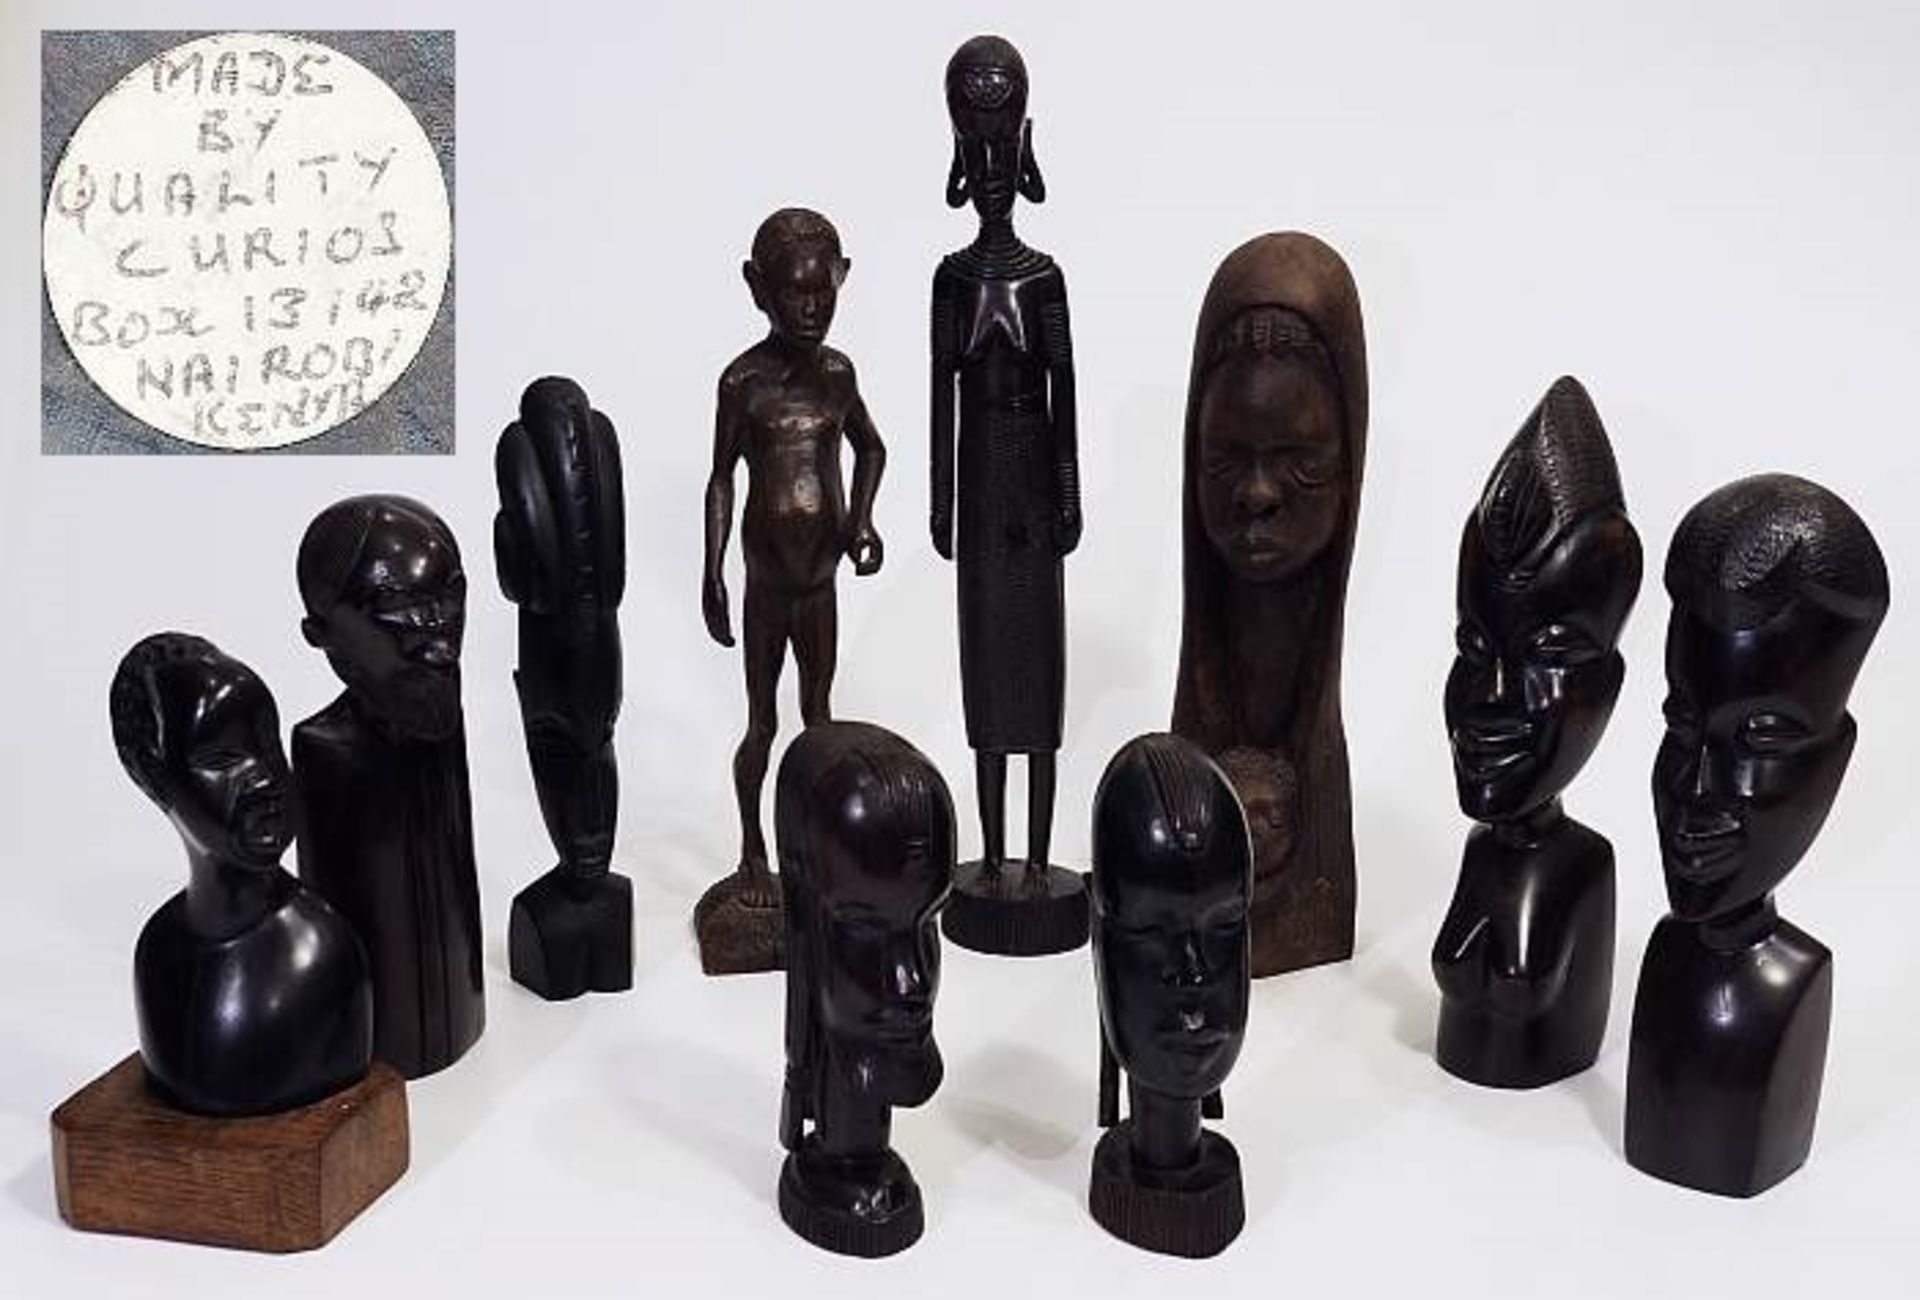 Sammlung von Statuetten und Büsten.Sammlung von Statuetten und Büsten, insgesamt 10 Stück. Afrika,